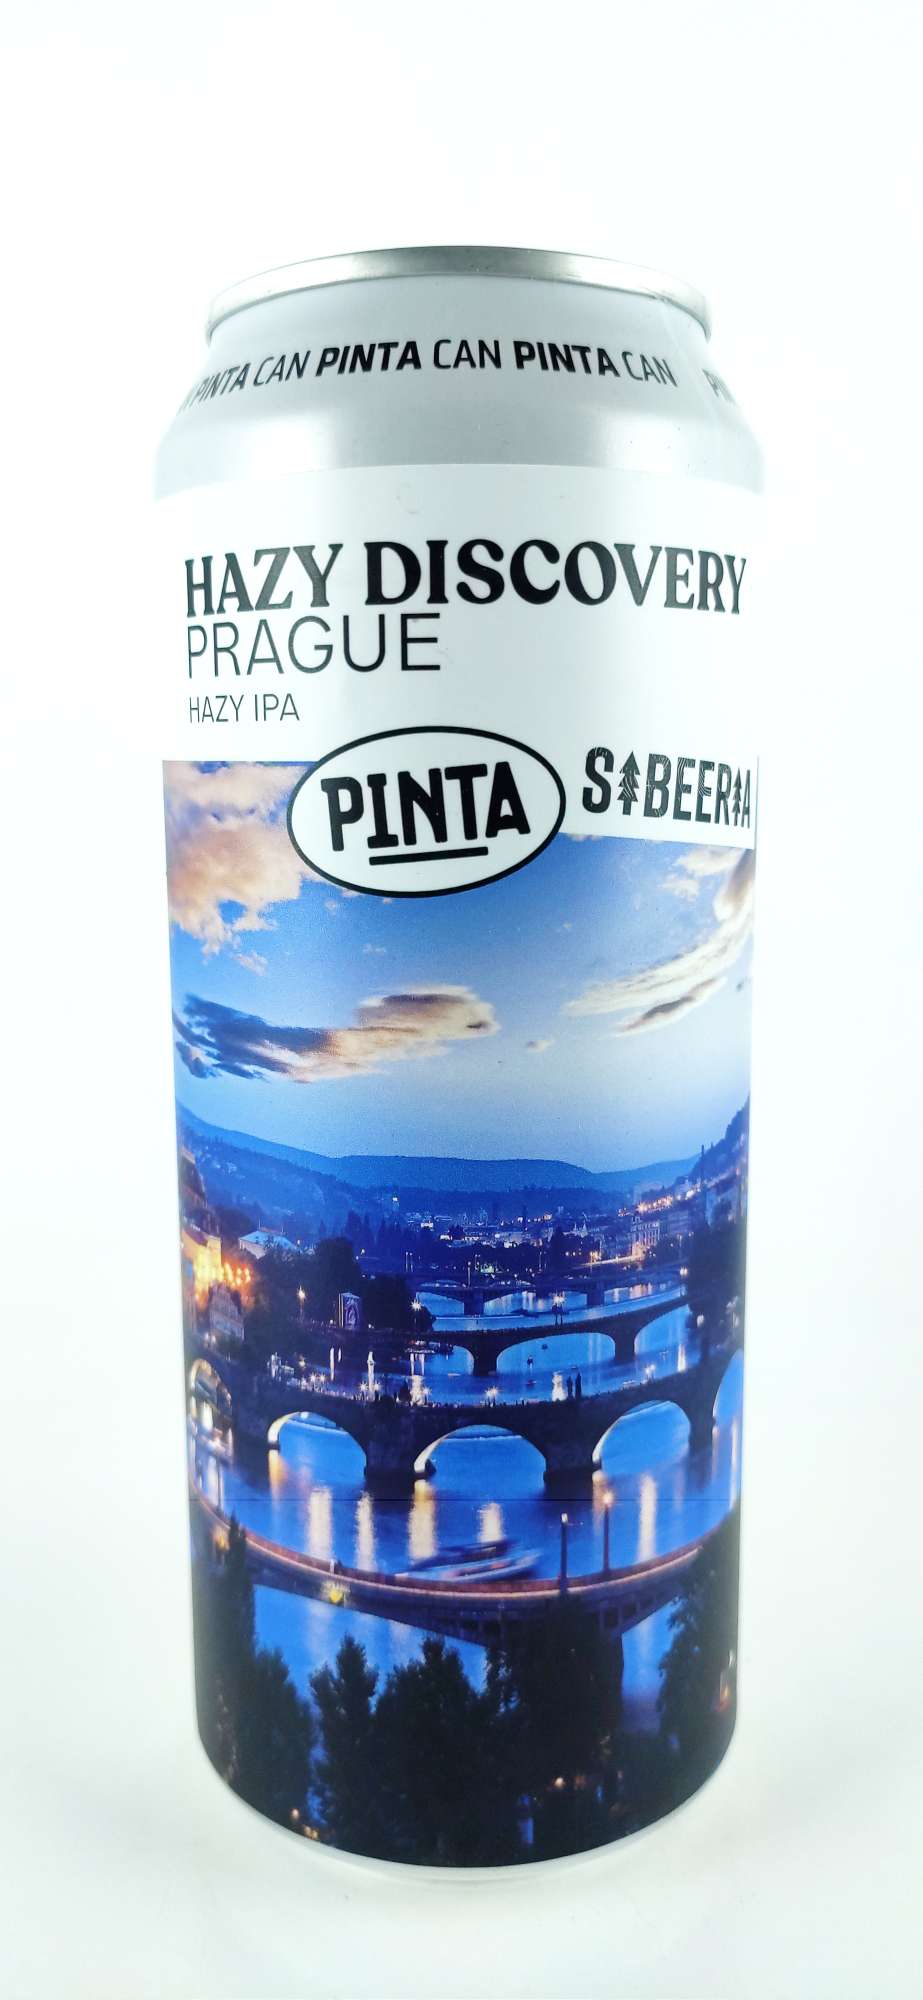 Sibeeria / Pinta Hazy Discovery Prague Hazy IPA 16°